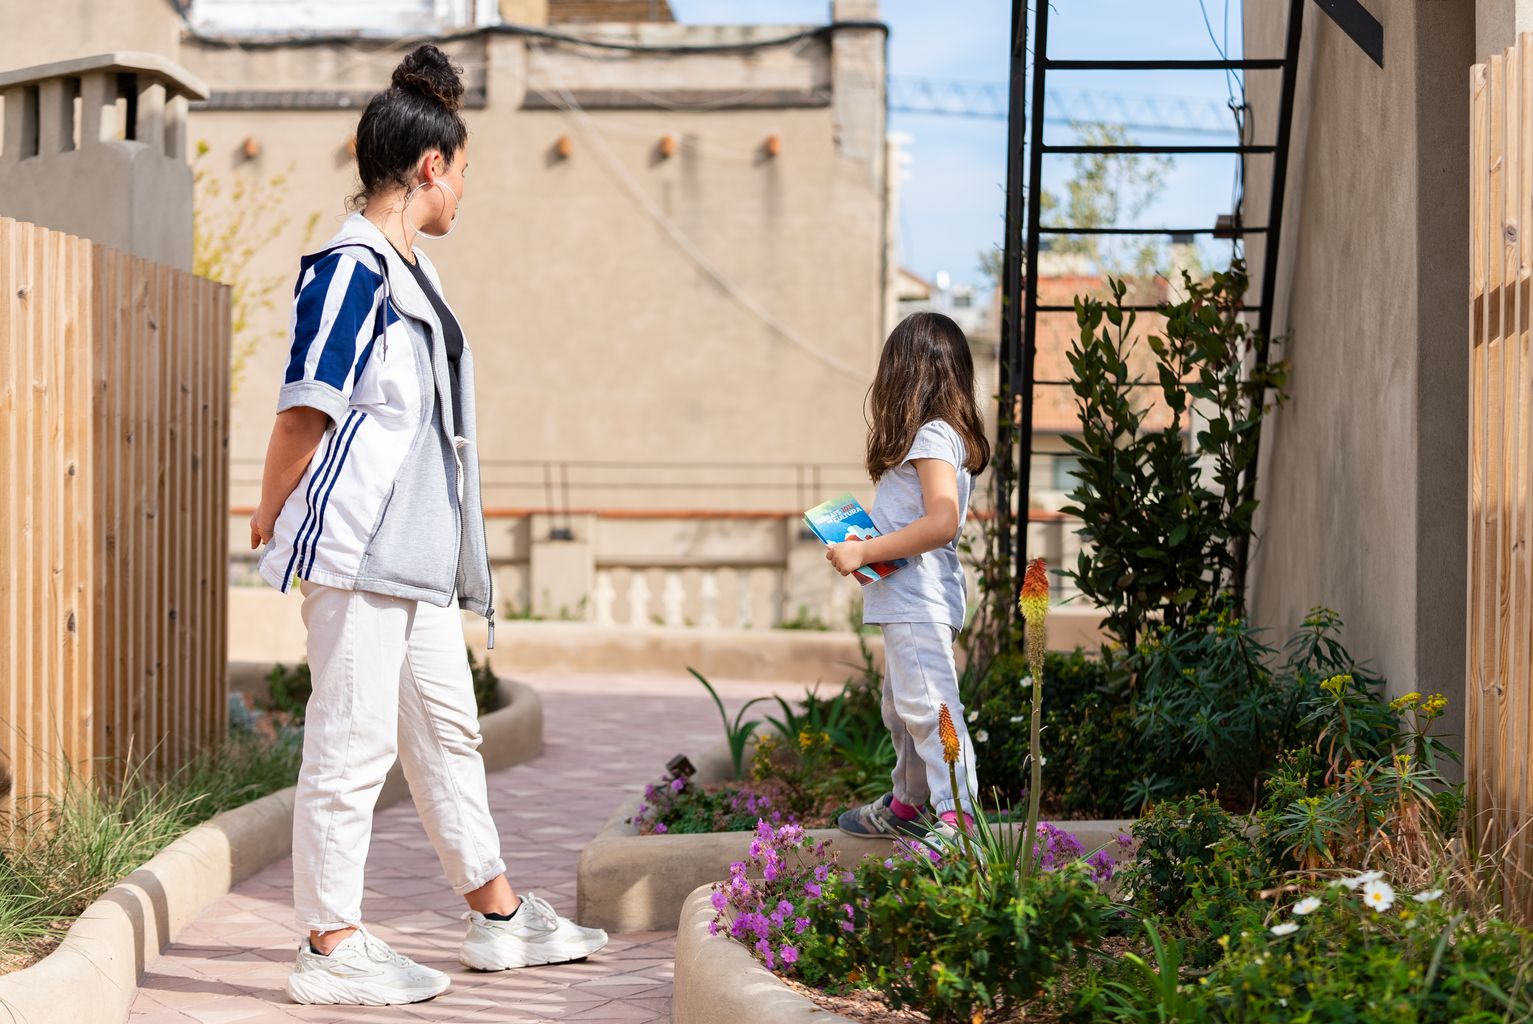 Una chica y una niña pequeña juegan durante la visita a la azotea del edificio de la calle de Provença, 268, dentro de +MODEL, "Conoce una nueva cubierta verde"